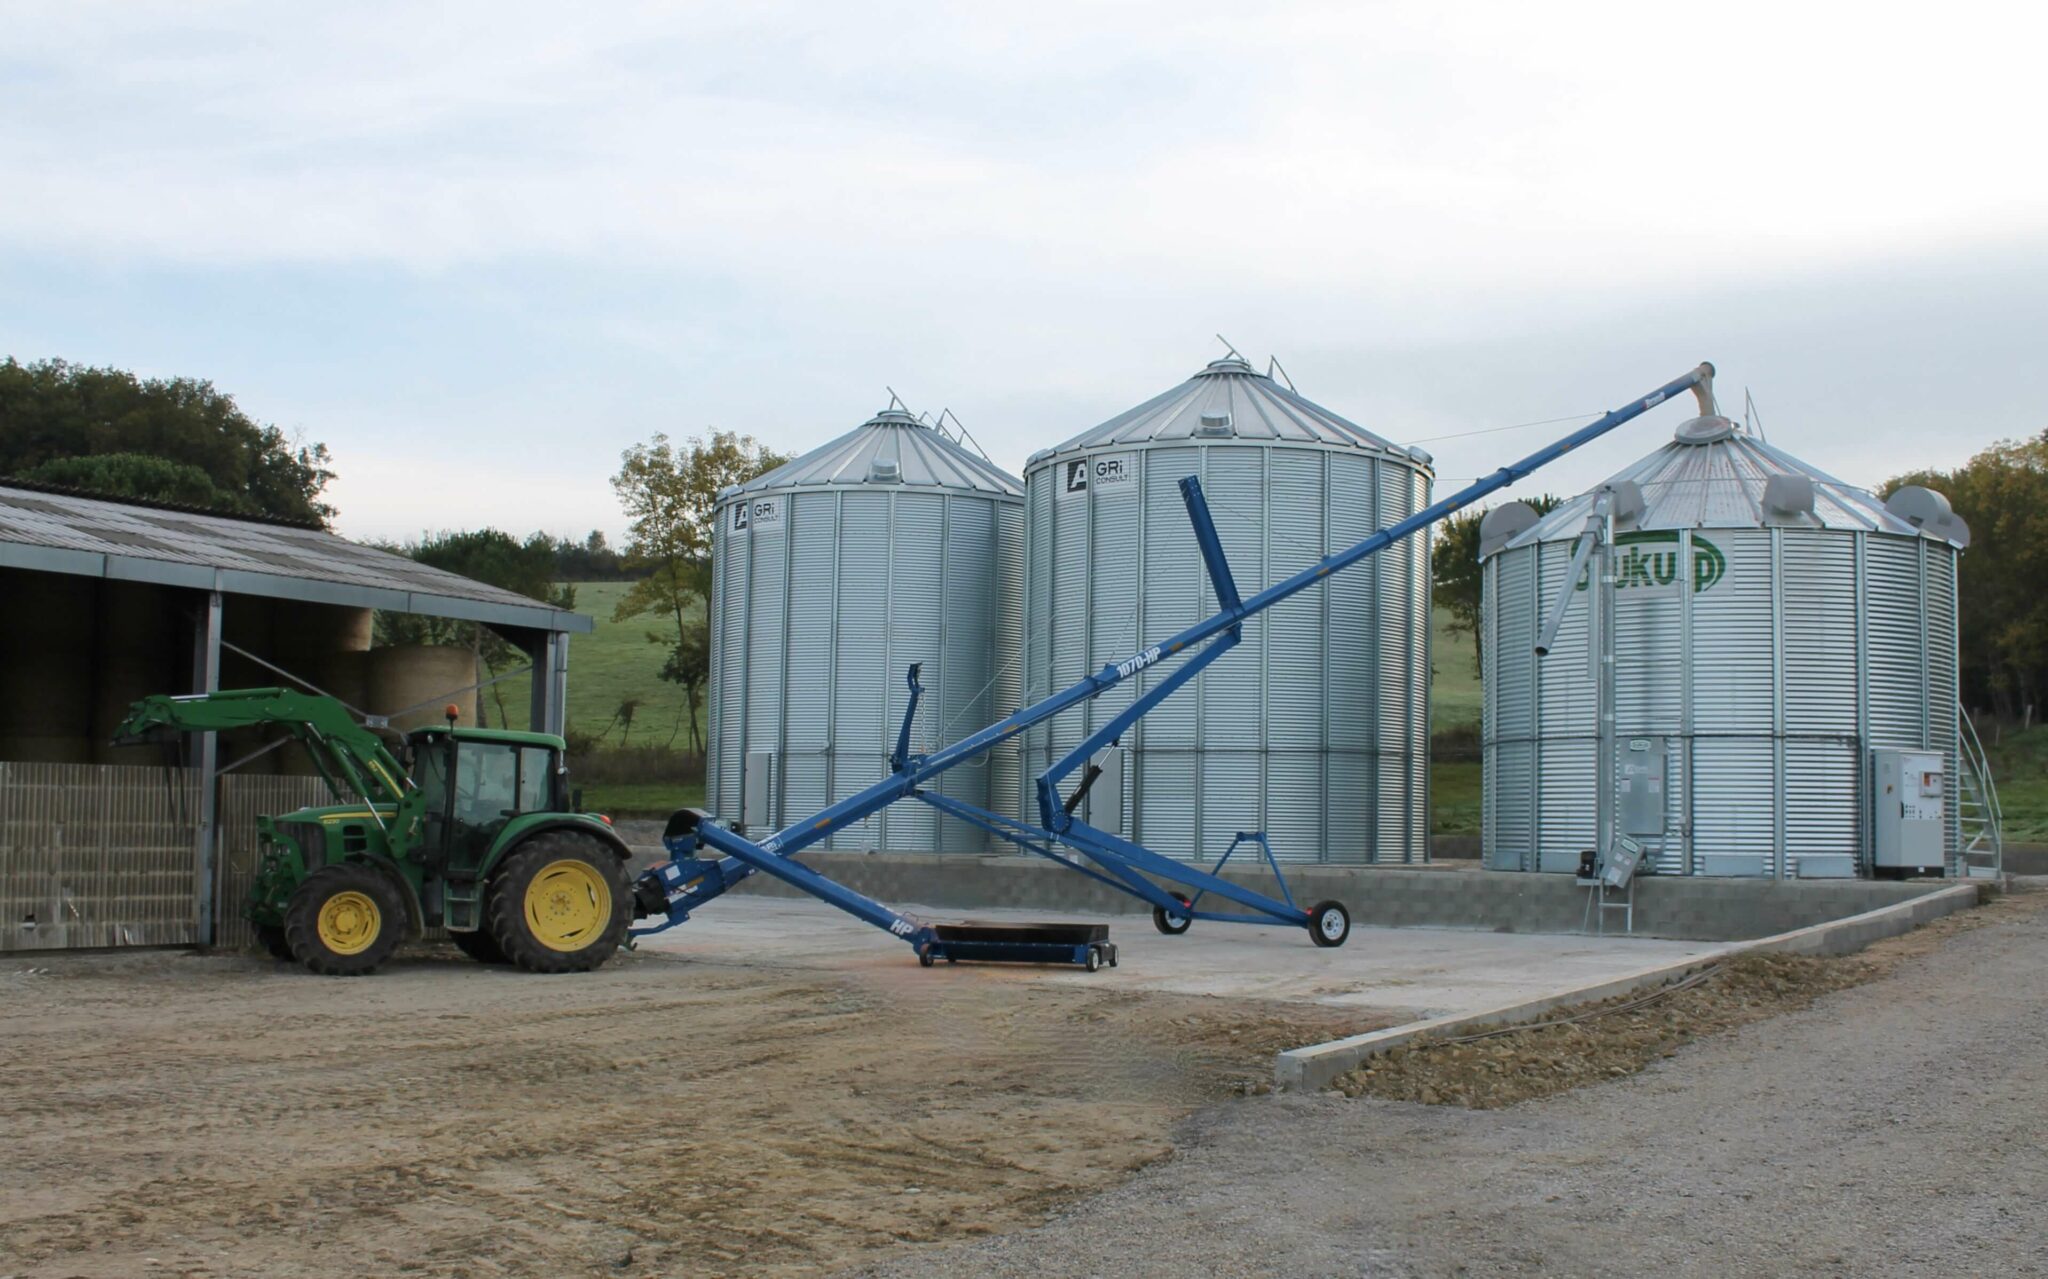 vis Brandt 1070 HP chargement grains céréales cereales cereale céréale agriconsult silos silo cellule sécheuse tracteur SUKUP